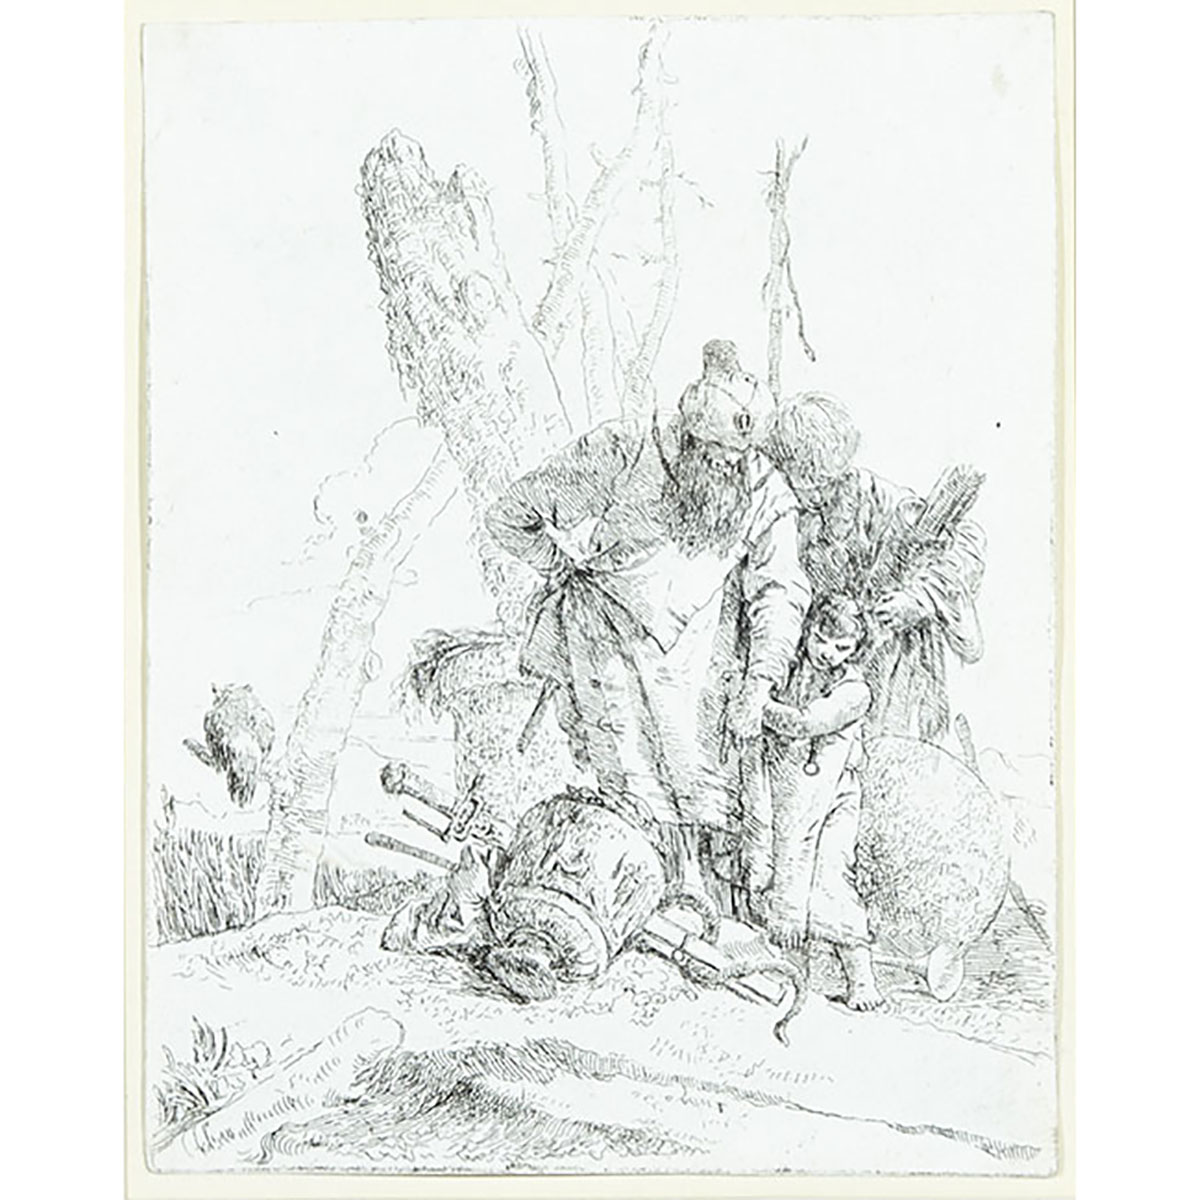 Giovanni Battista Tiepolo (1696-1770)